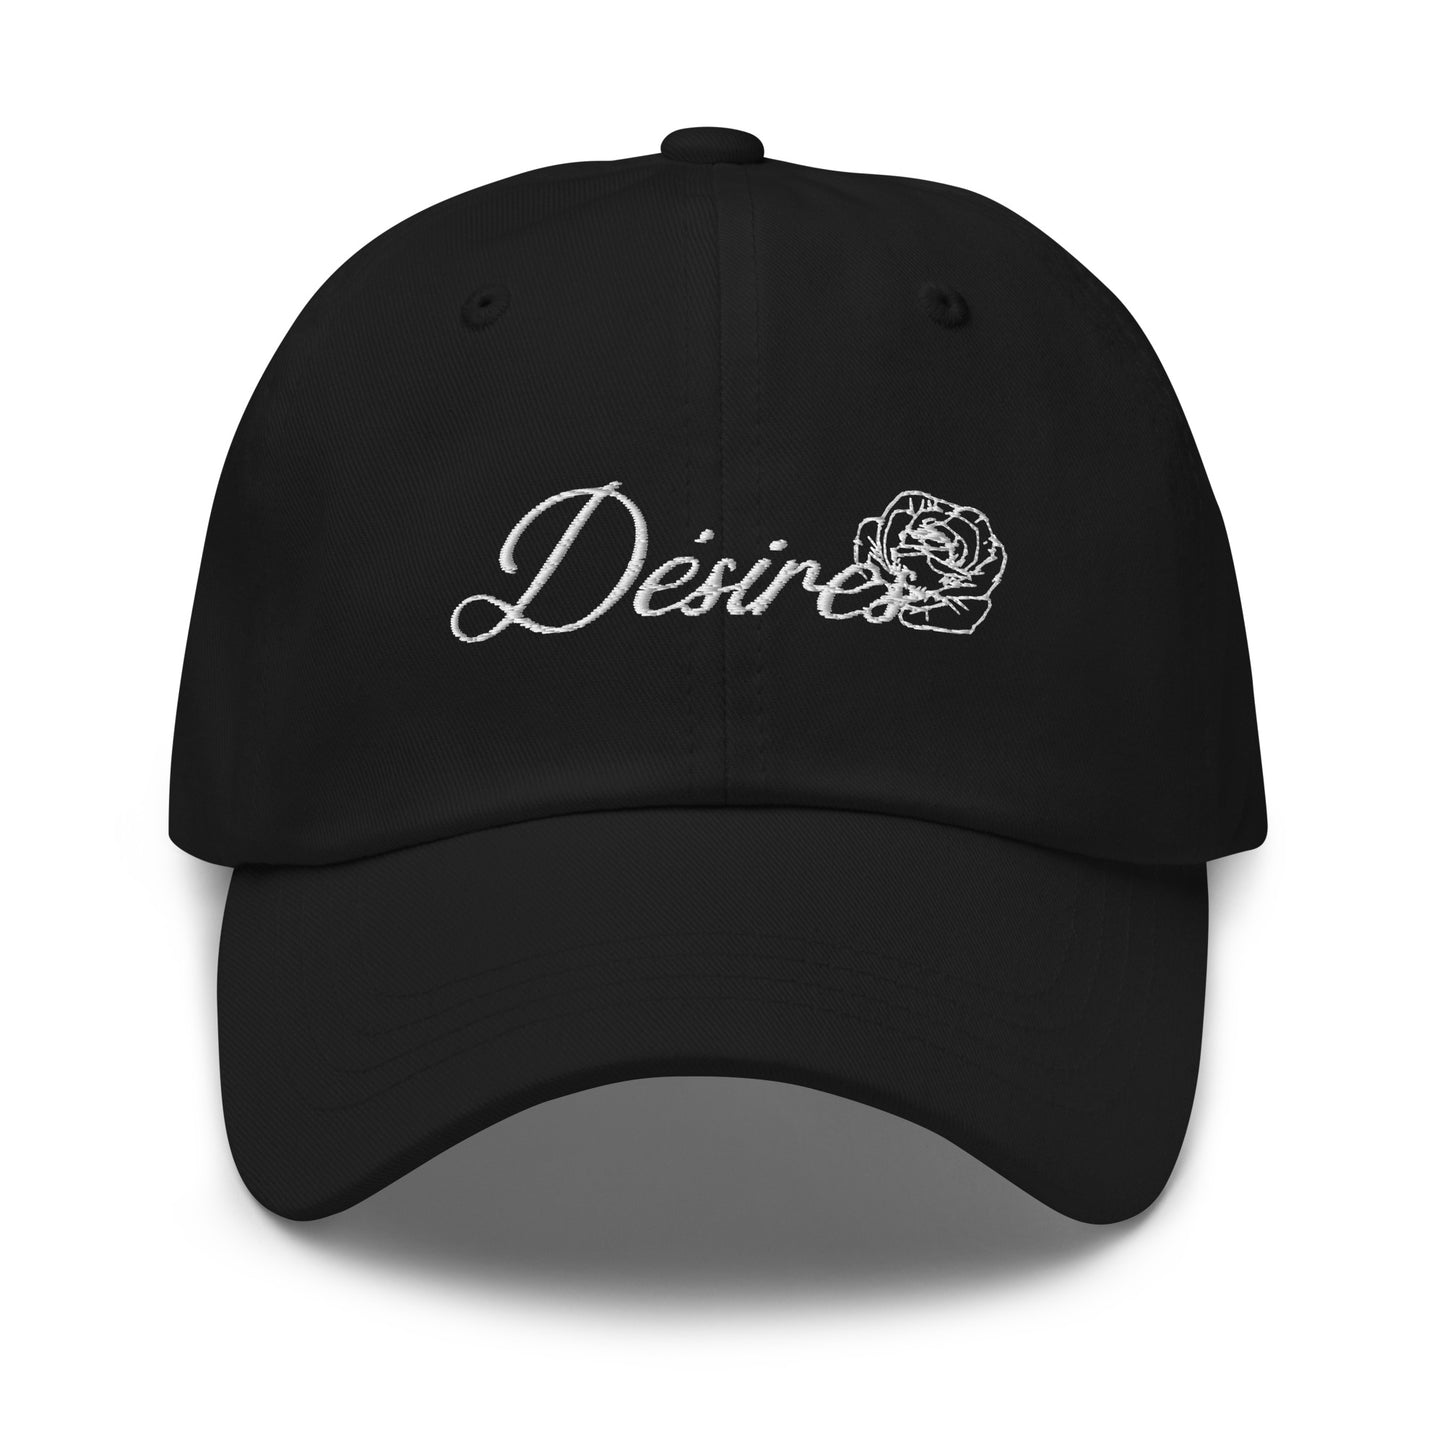 Desires Licensed Dad hat